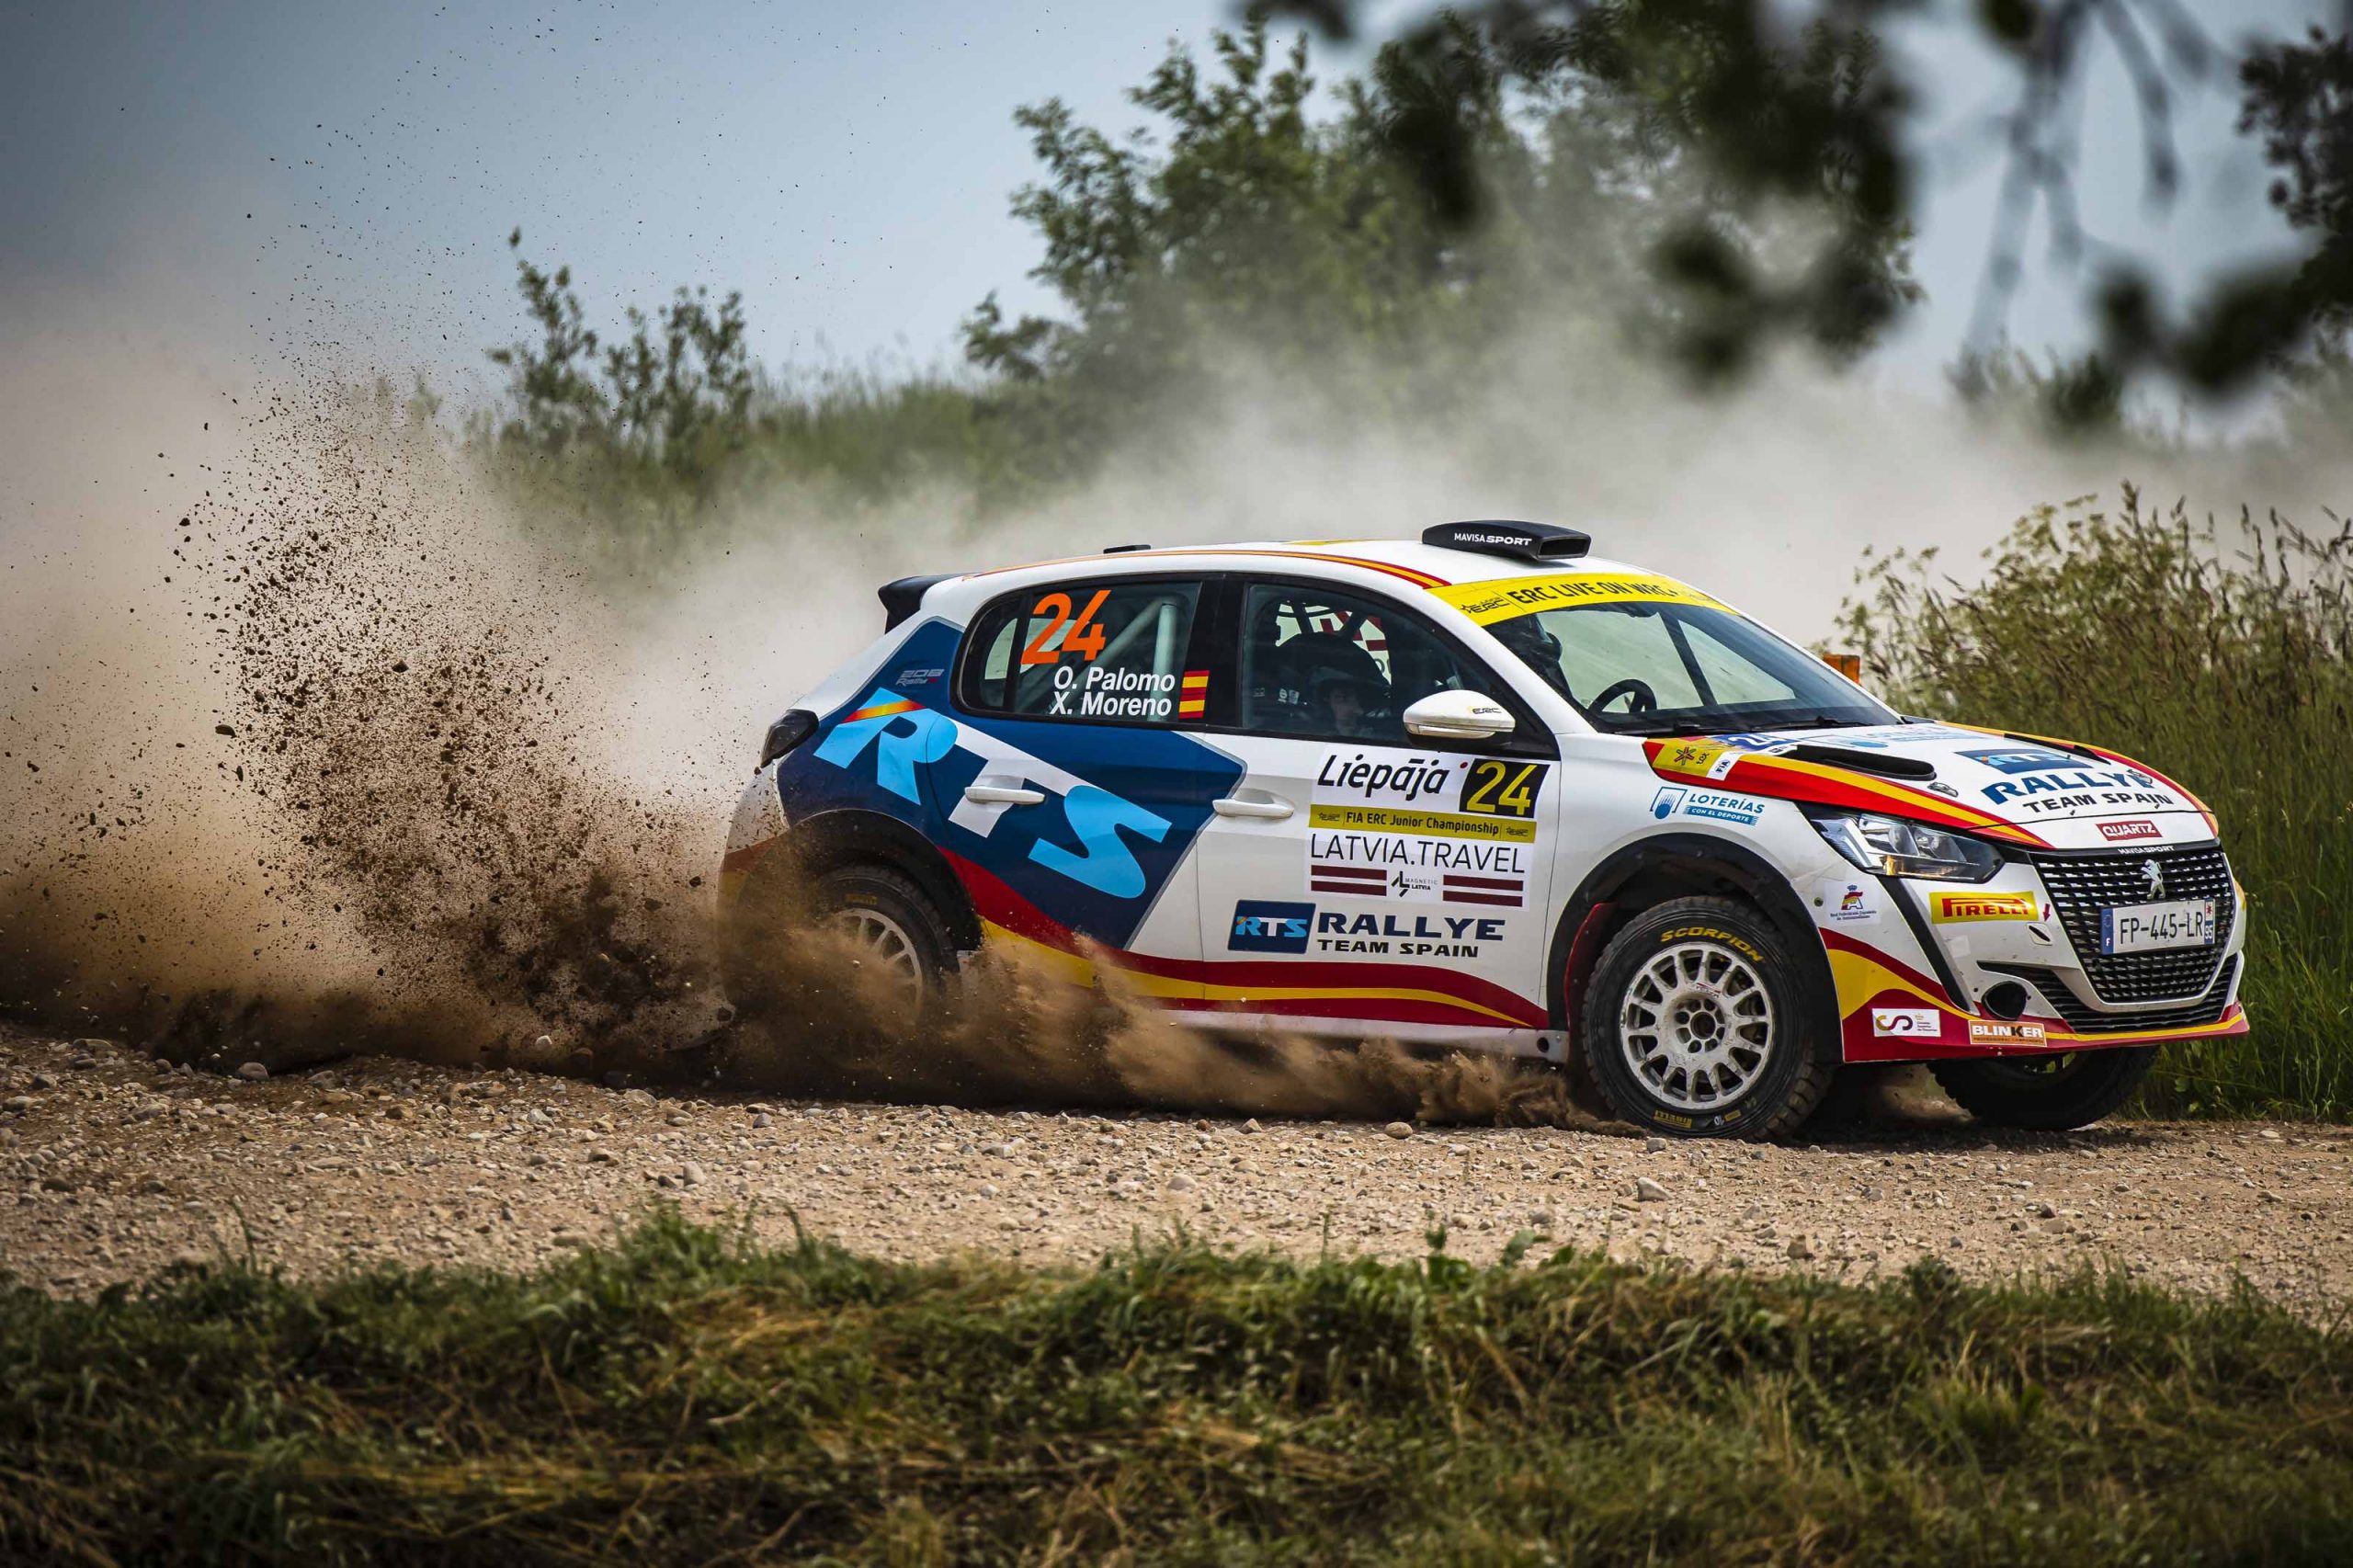 Doble victoria en Letonia con Óscar Palomo para el Peugeot 208 Rally4 del Rallye Team Spain